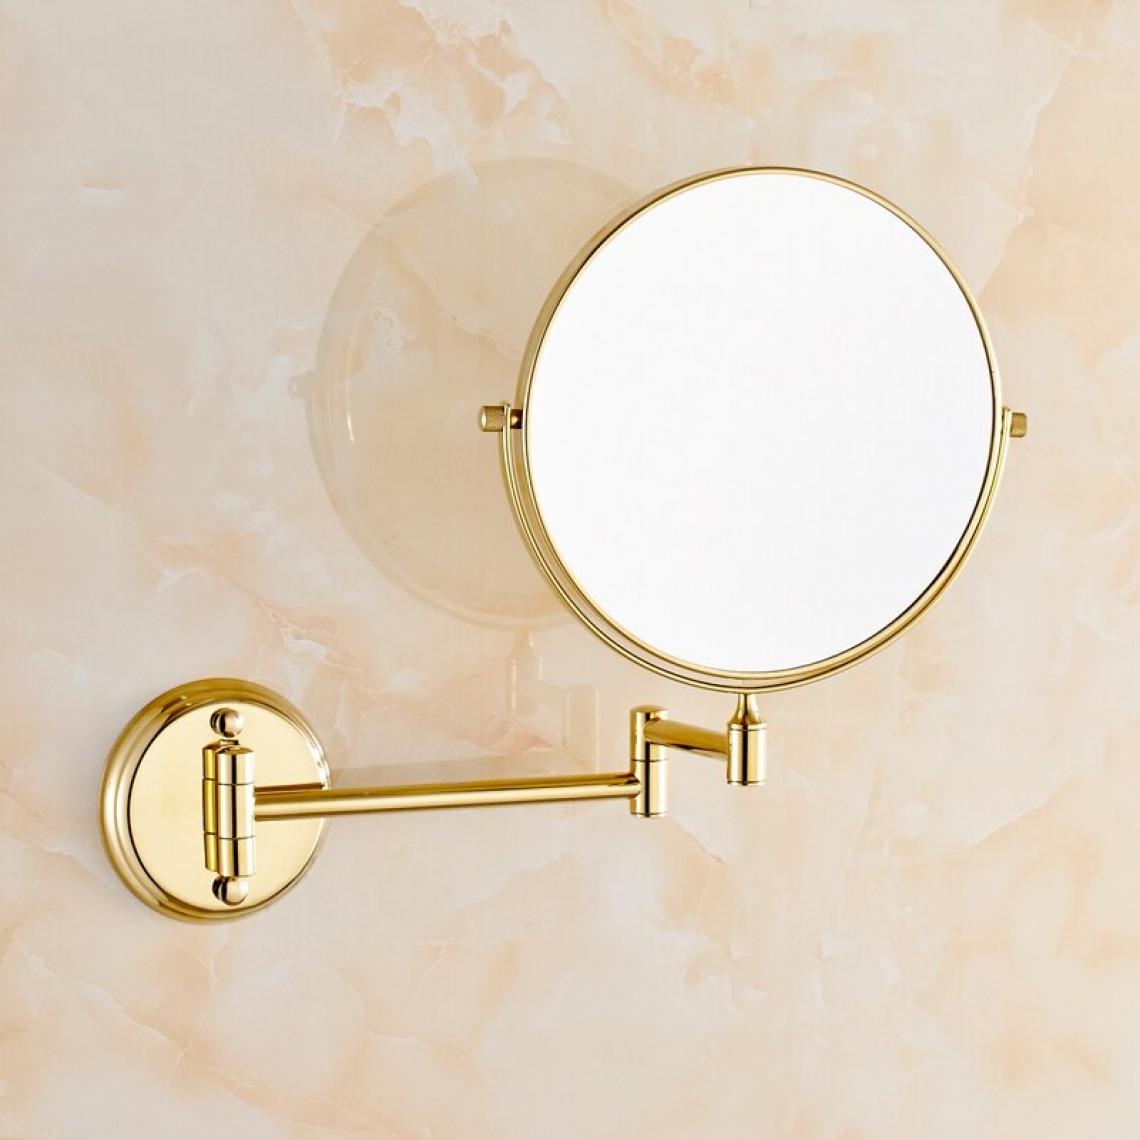 Universal - Miroir de salle de bains 8 pouces double face montage mural agrandissement miroir en laiton accessoires miroir de maquillage de salle de bains européenne |(Or) - Miroir de salle de bain